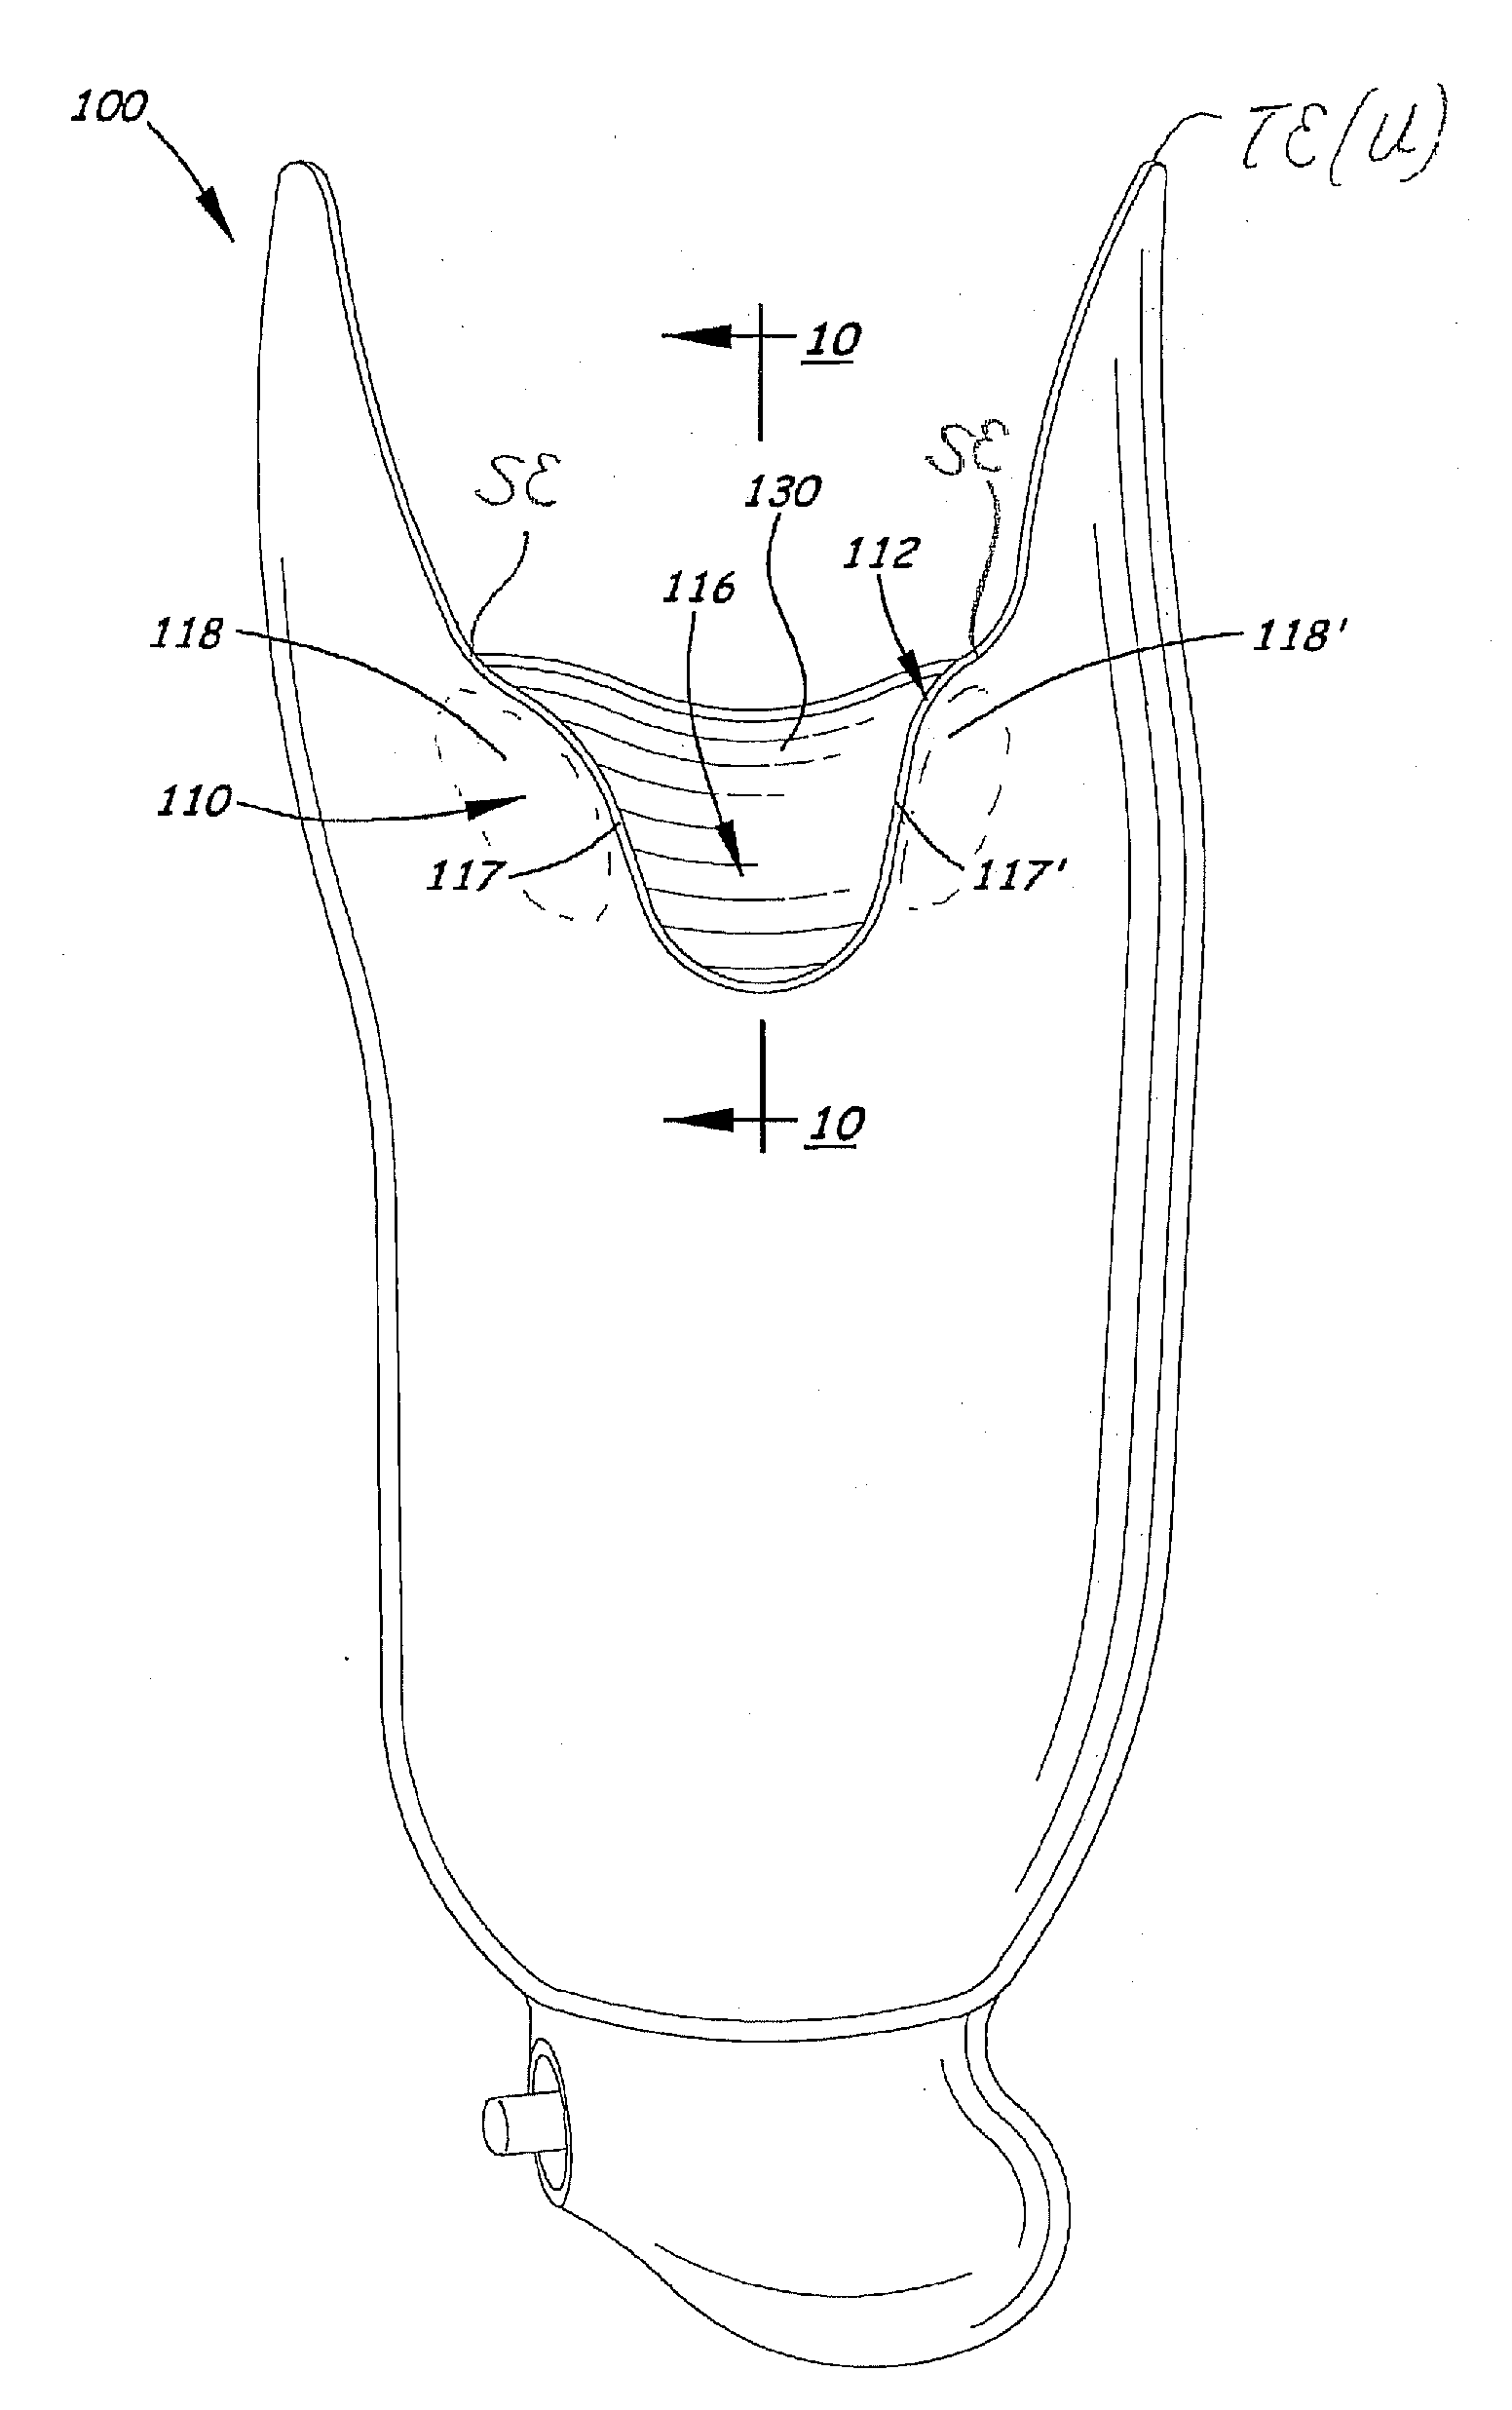 Transtibial socket for external prosthesis